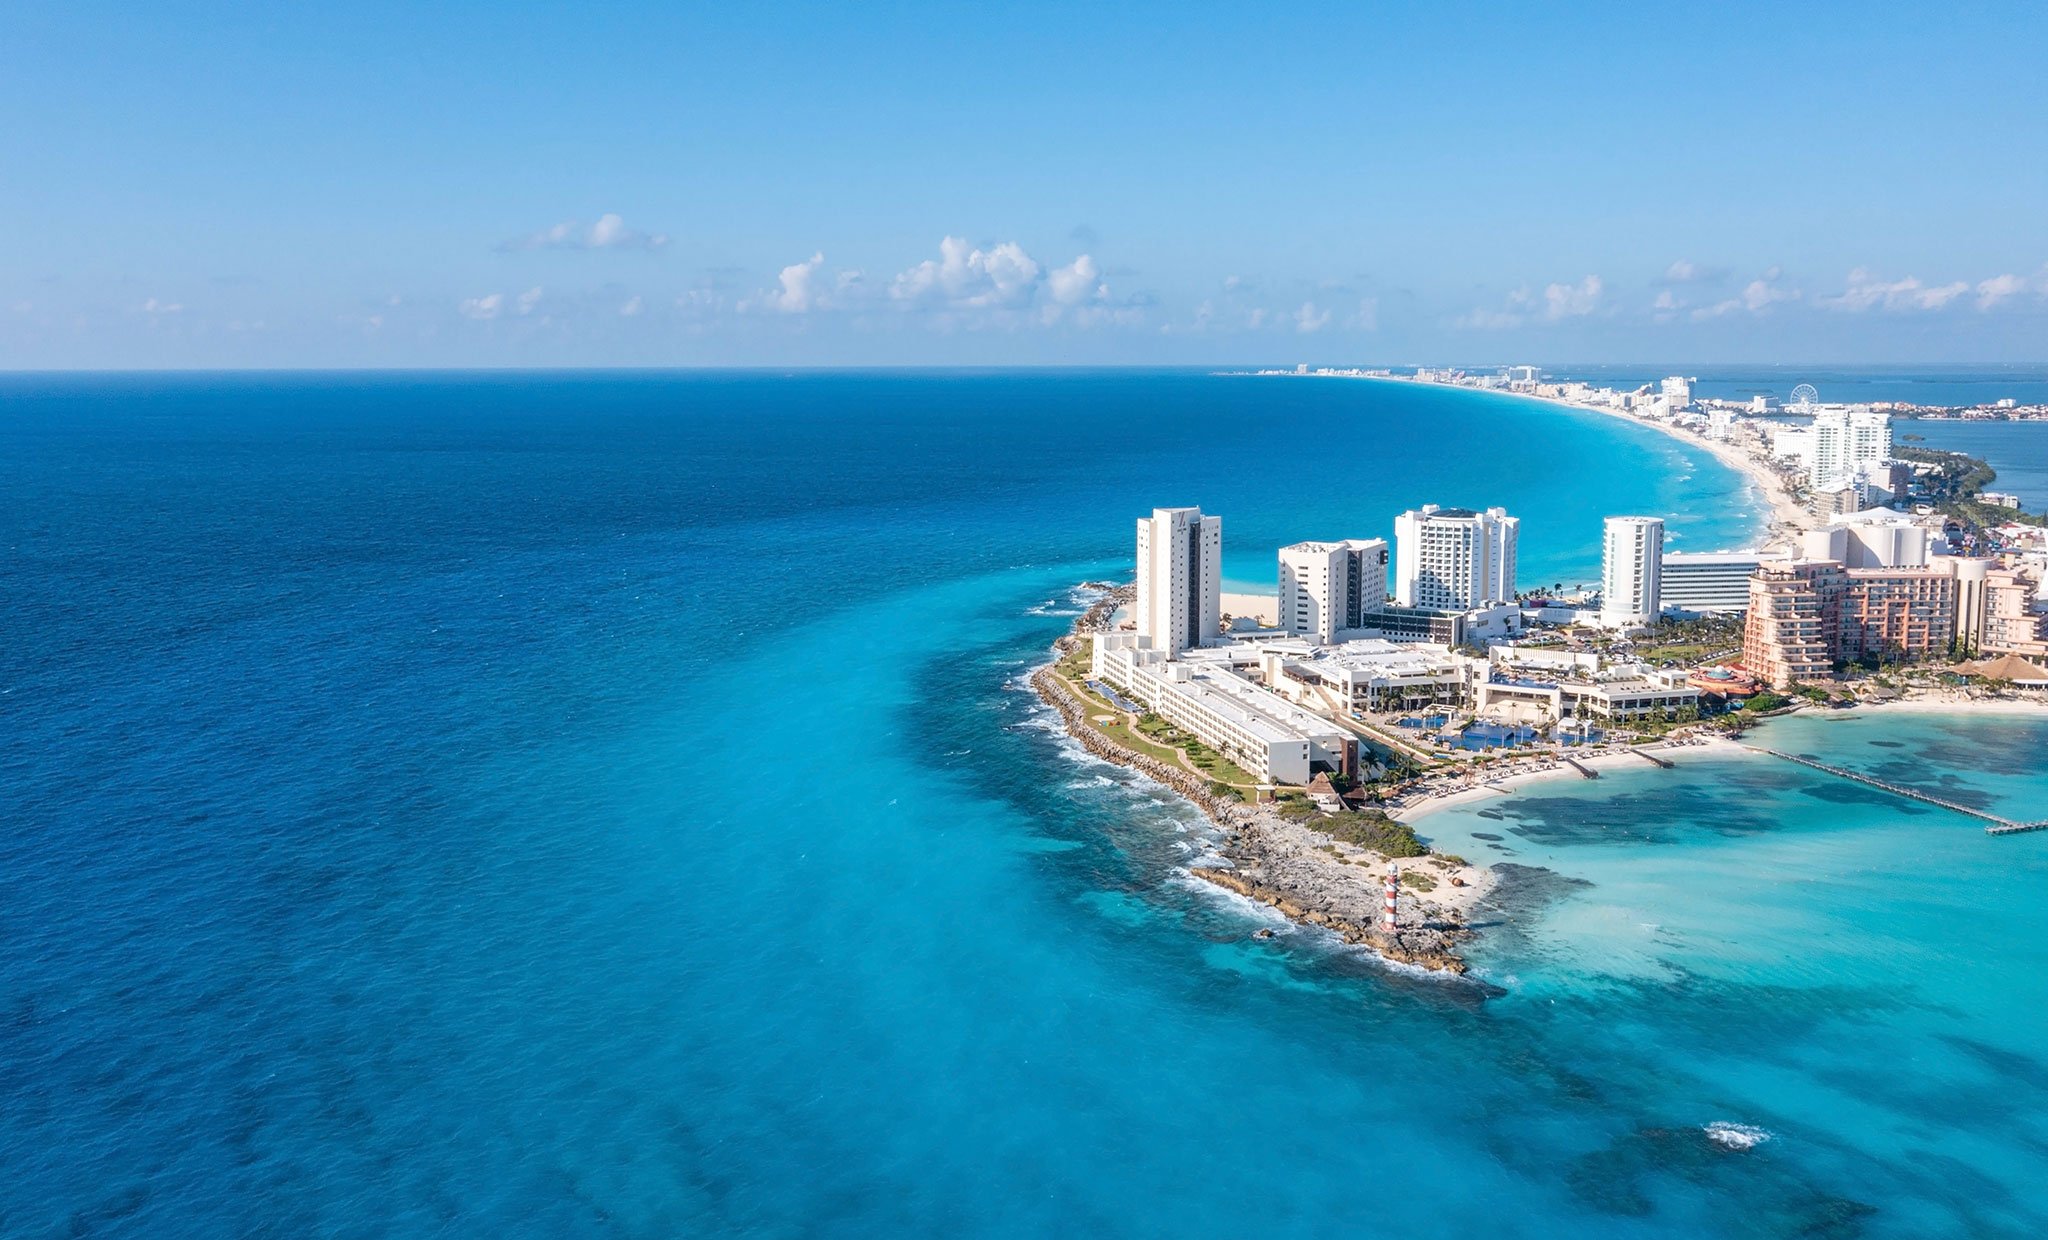 Los complejos turísticos de lujo se ubican en las sinuosas playas de Cancún.